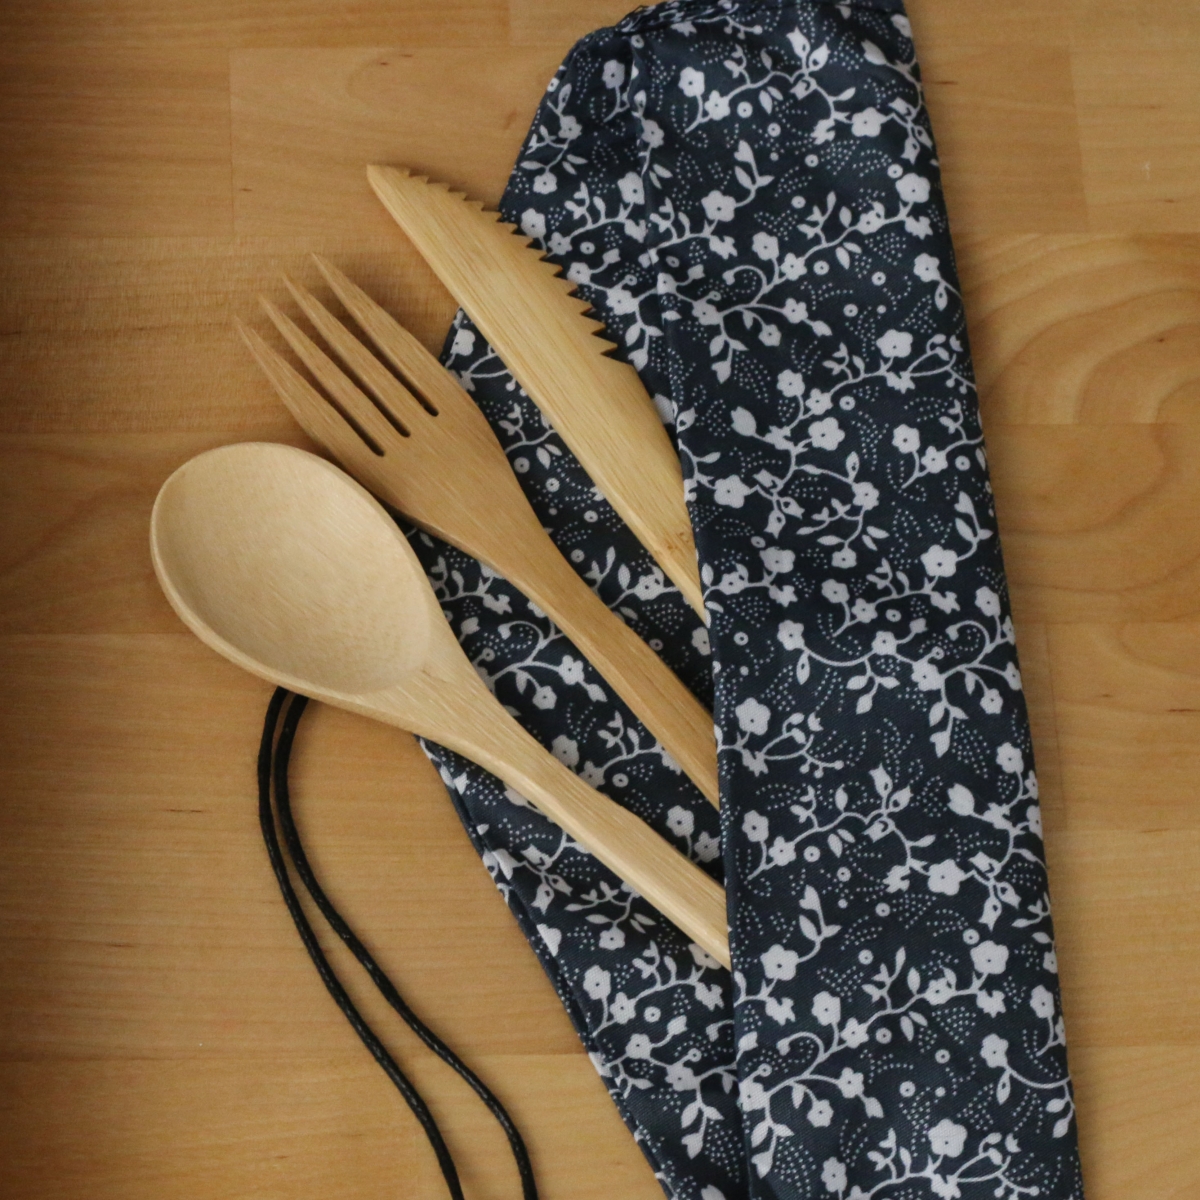 Reusable utensils in flower bag